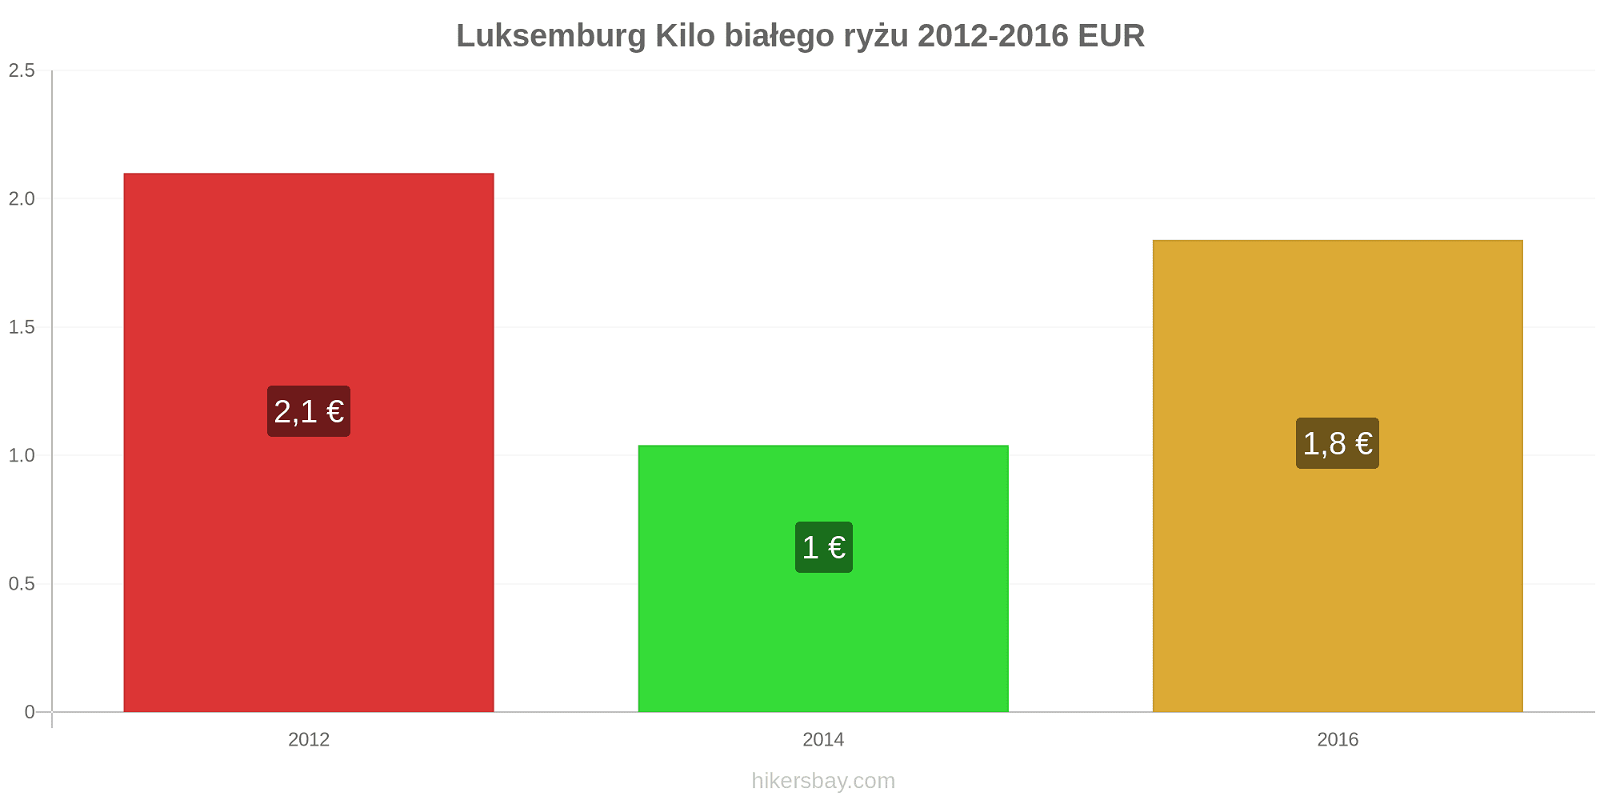 Luksemburg zmiany cen Kilo białego ryżu hikersbay.com